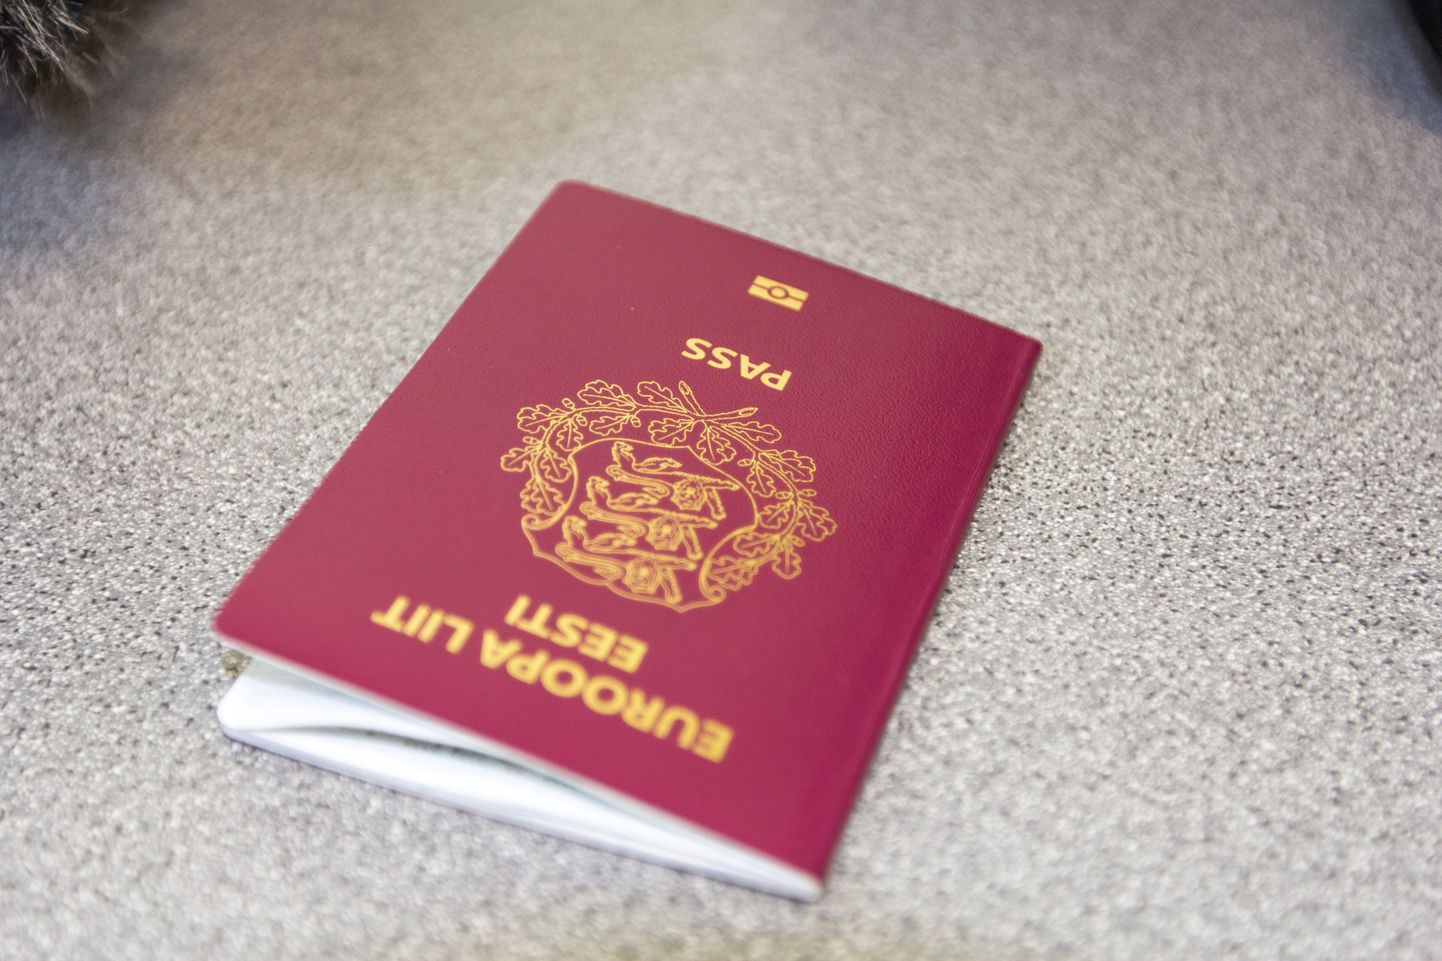 Eesti kodaniku pass.
Foto: Arvo Meeks/Valgamaalane